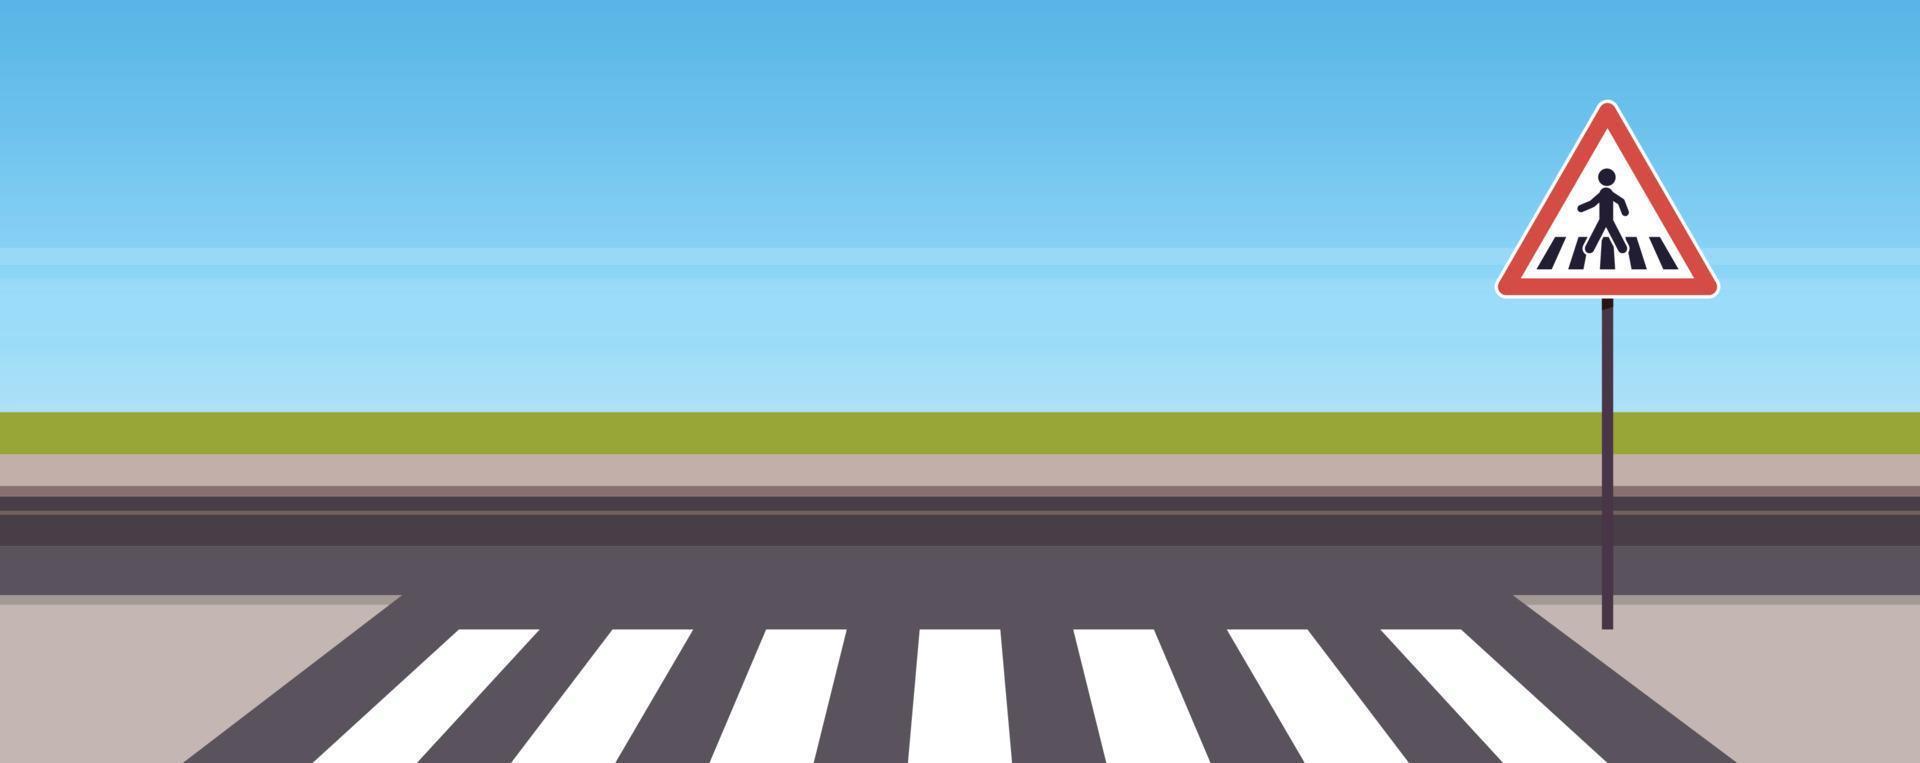 señales de tráfico en la carretera de la ciudad y el concepto de cruce de peatones ilustración vectorial plana. vector